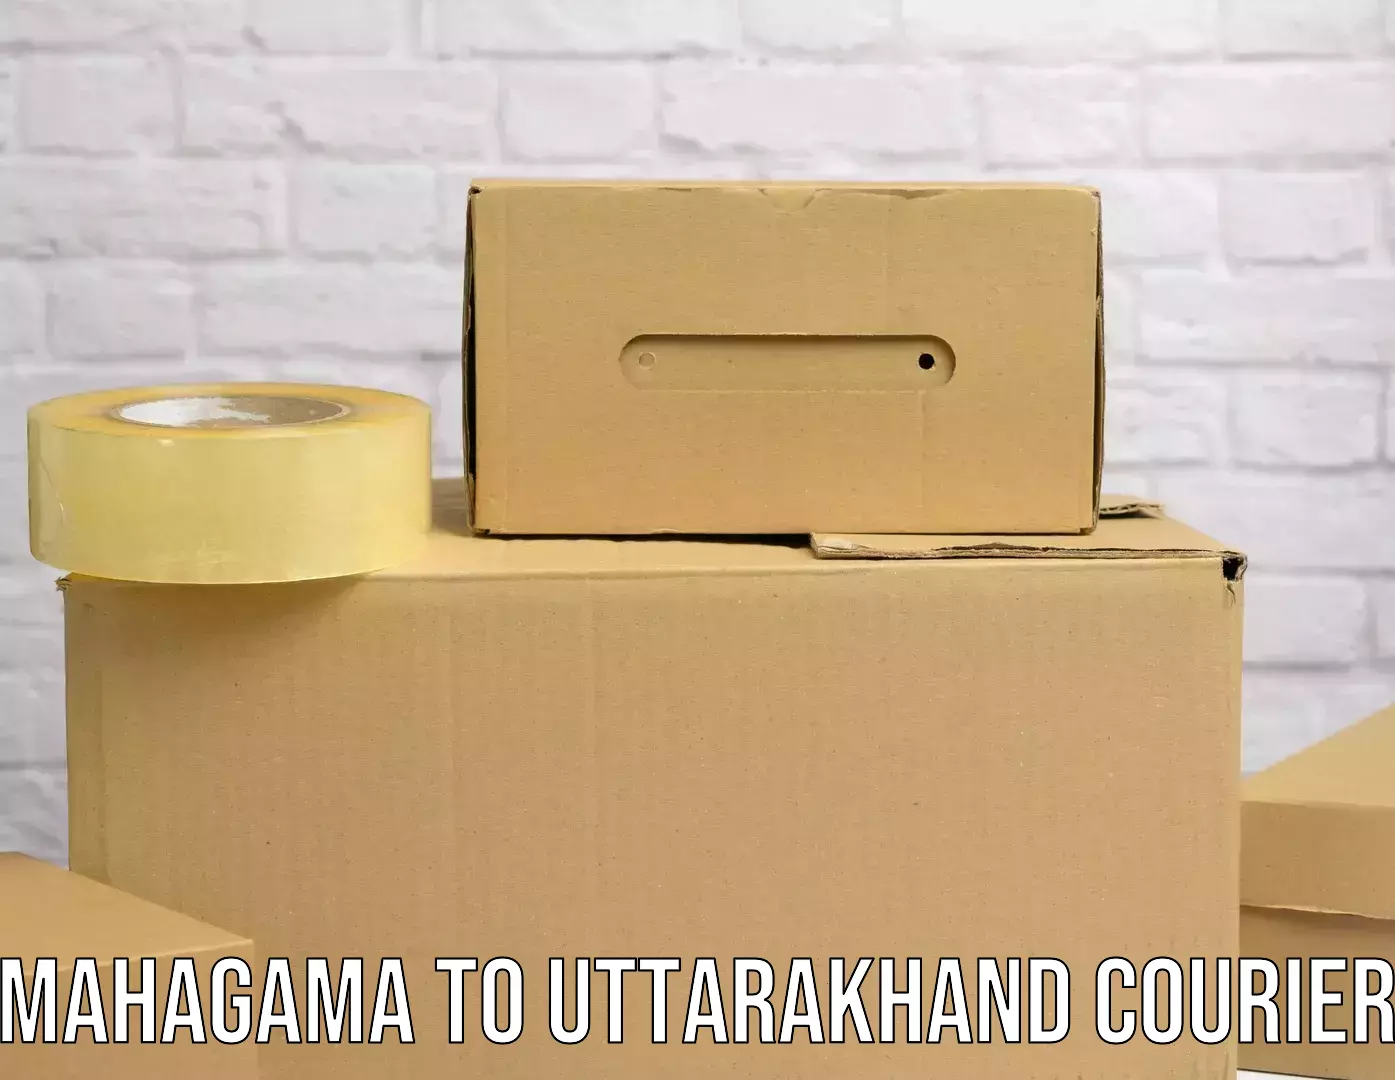 Efficient logistics management Mahagama to Paithani